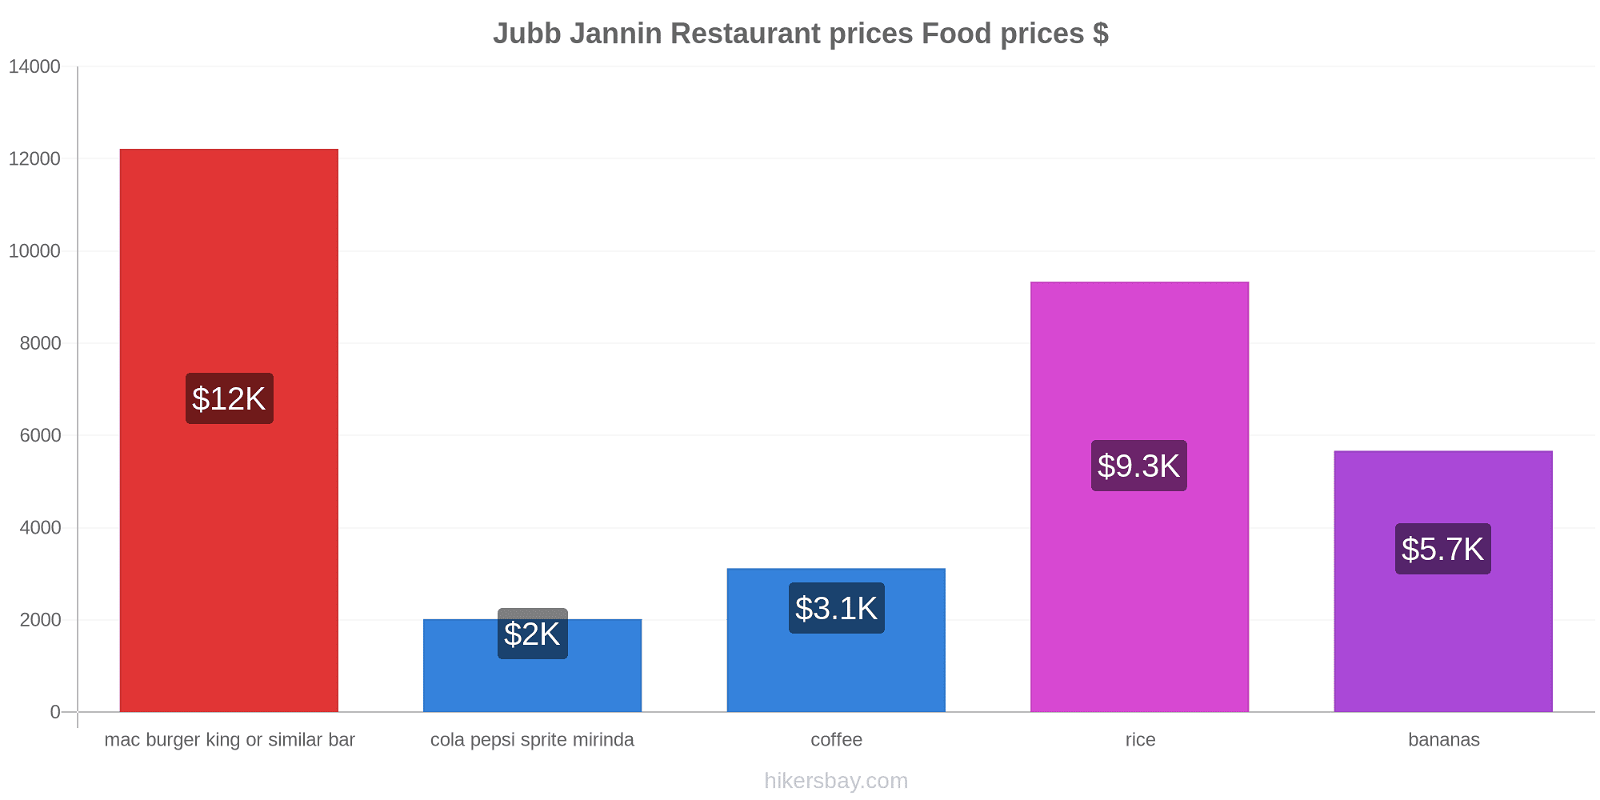 Jubb Jannin price changes hikersbay.com